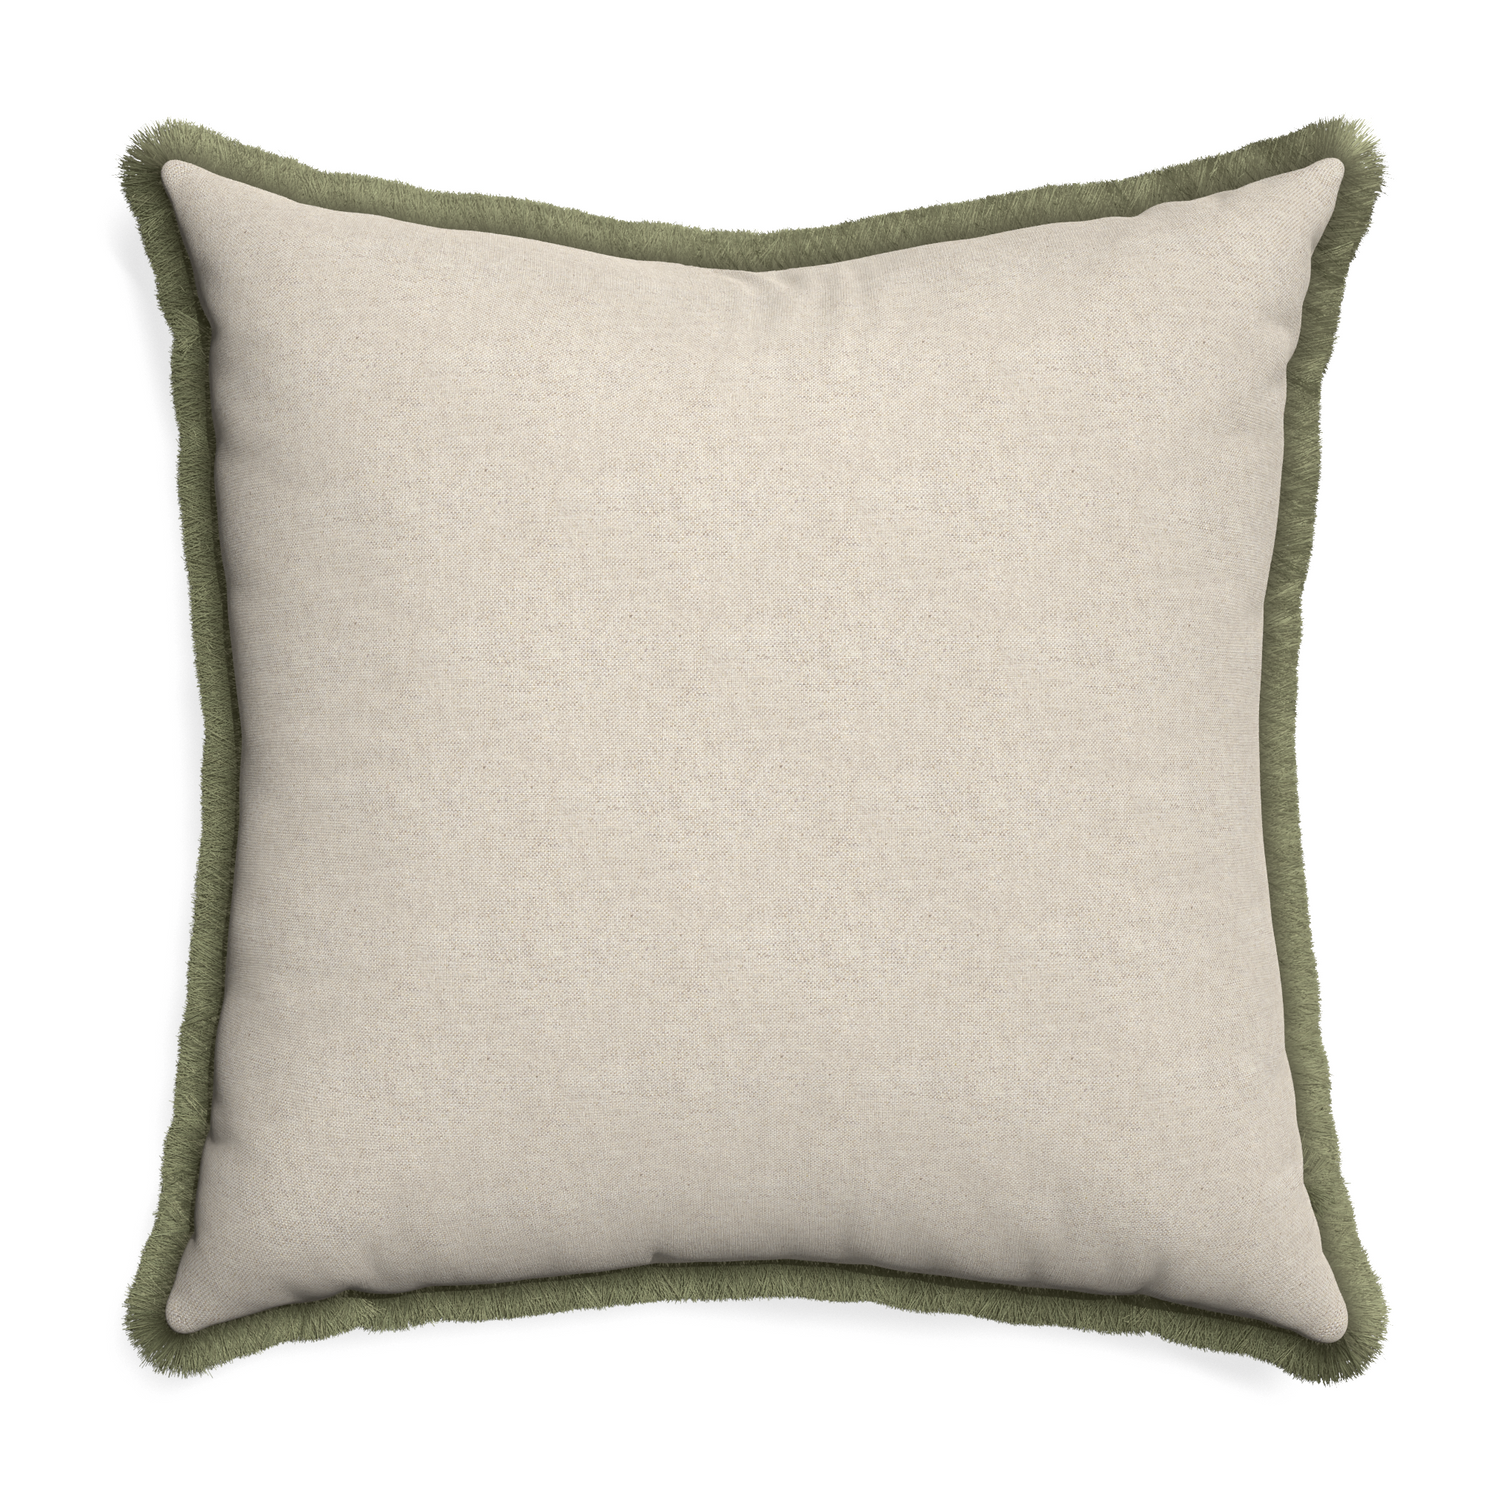 Euro-sham oat custom pillow with sage fringe on white background